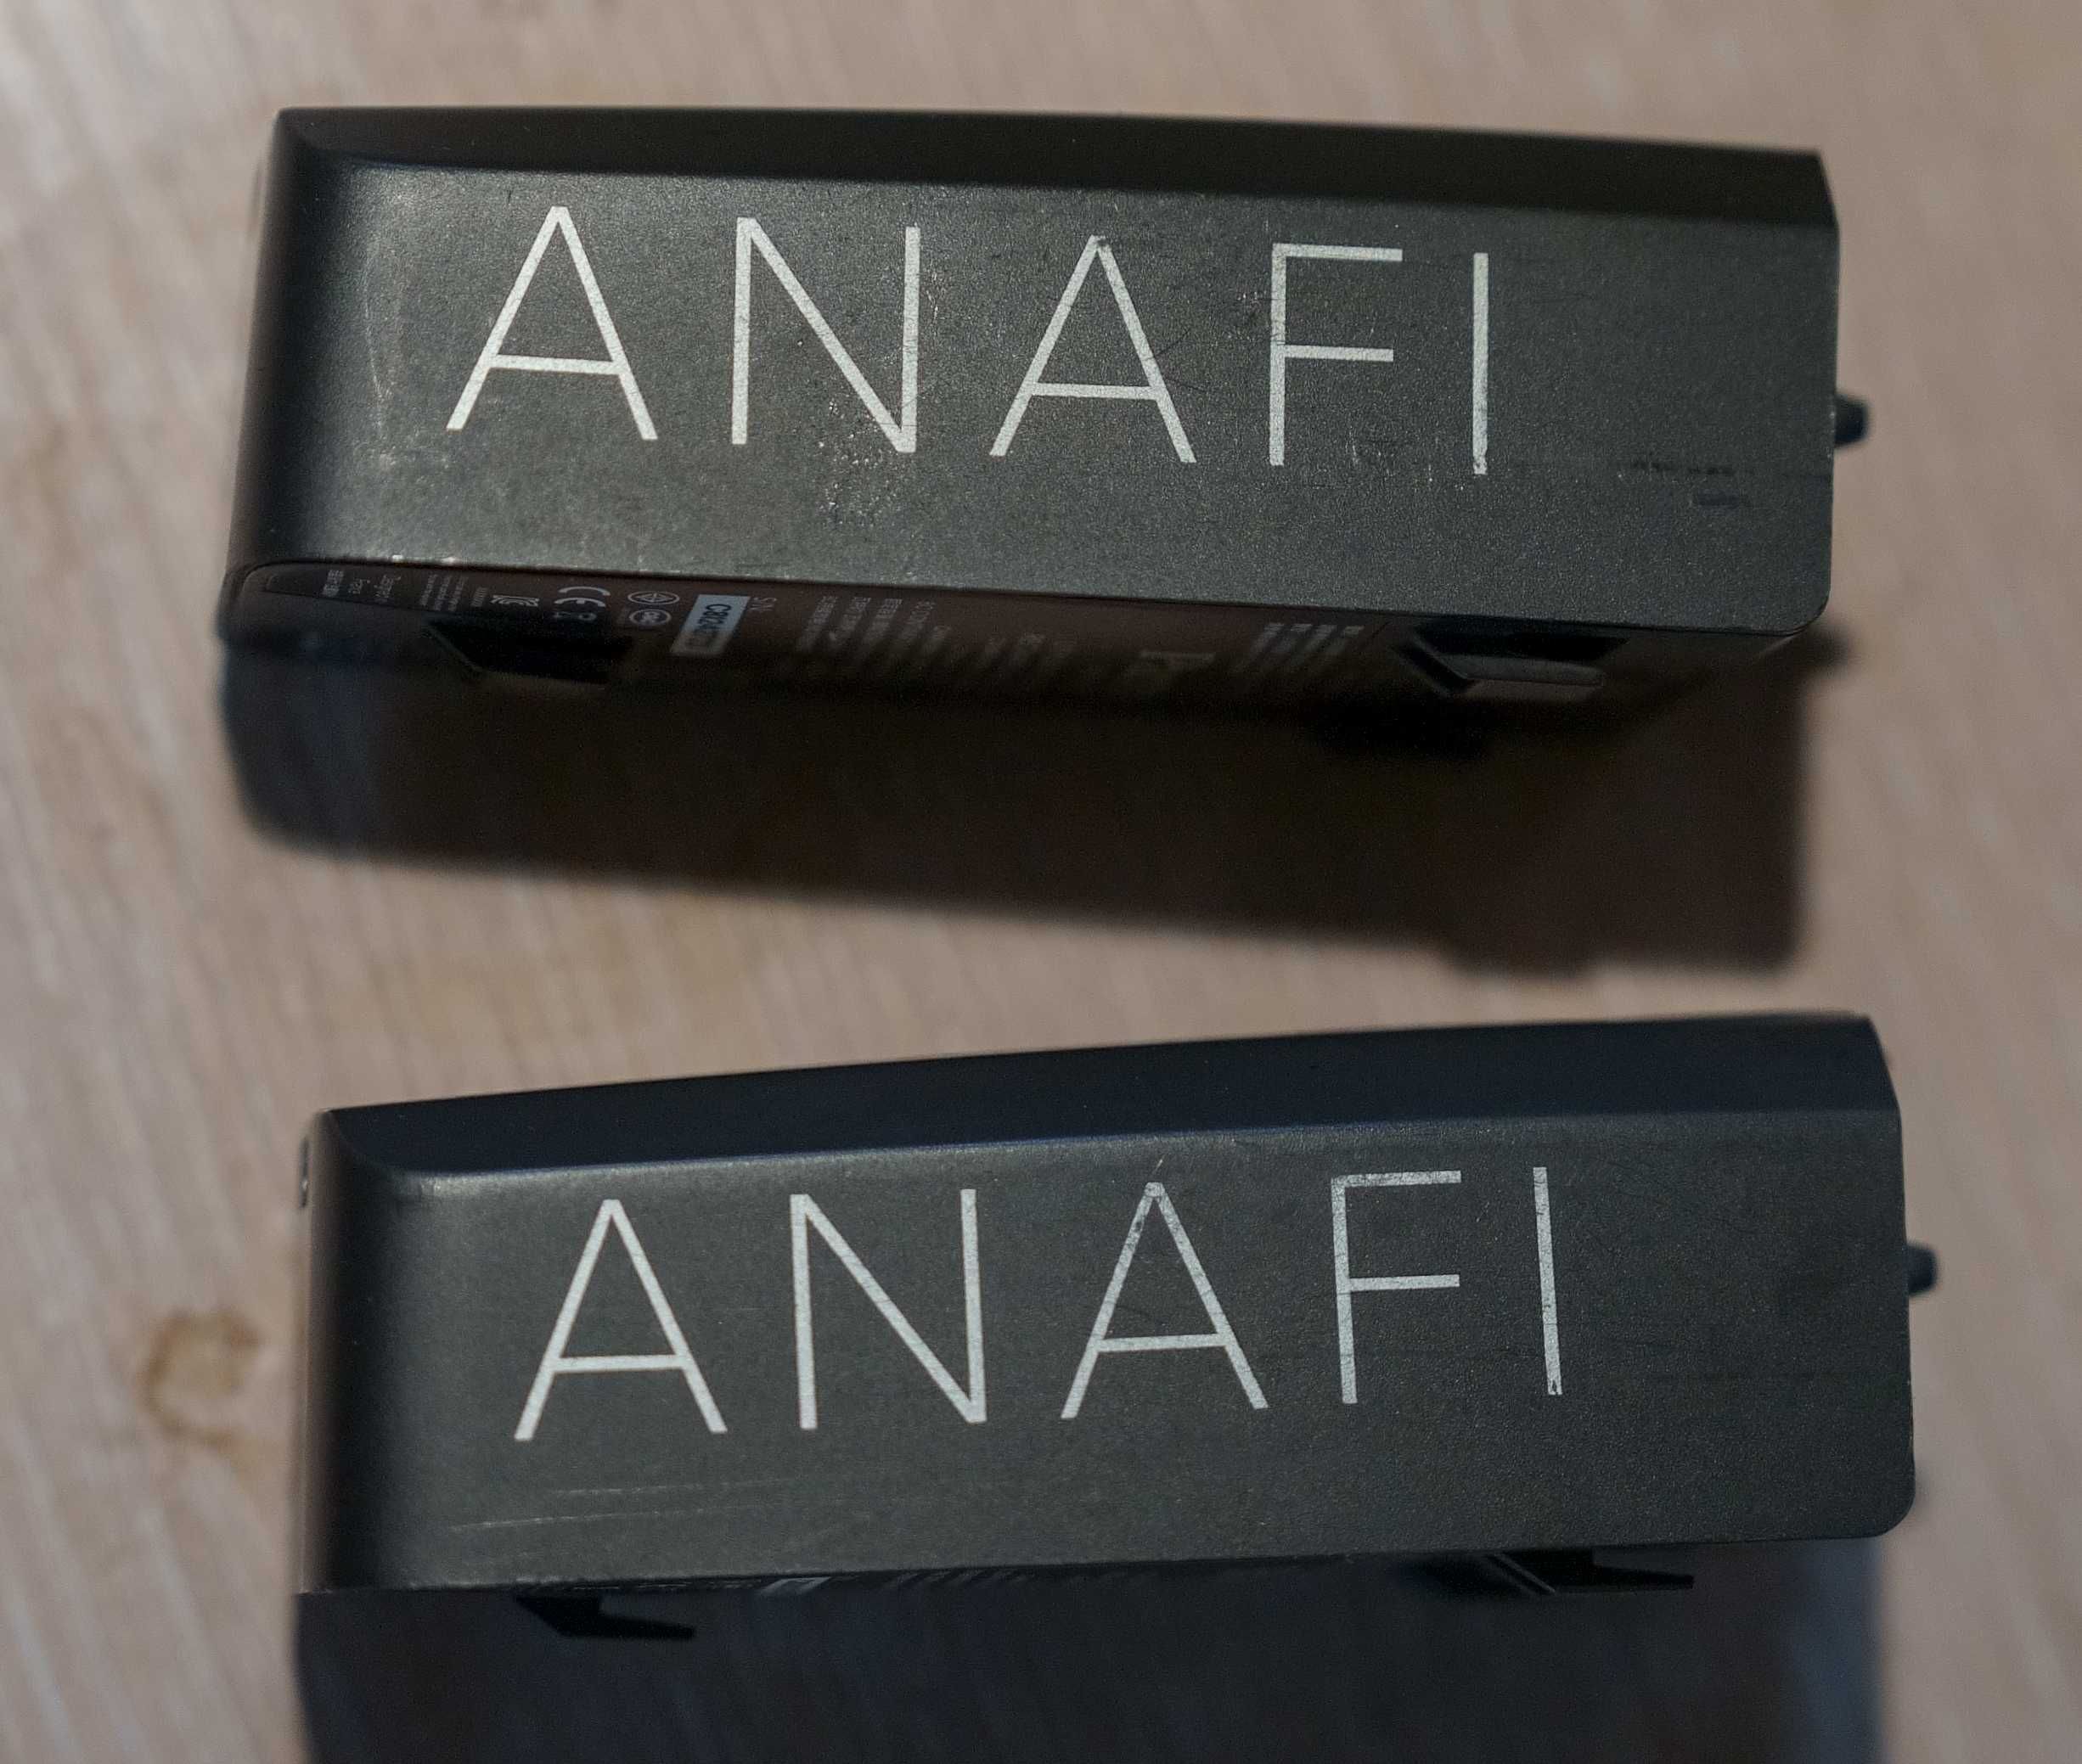 dron Anafi Parrot, 2 bateria akumulatory mocno zużyte ale działające